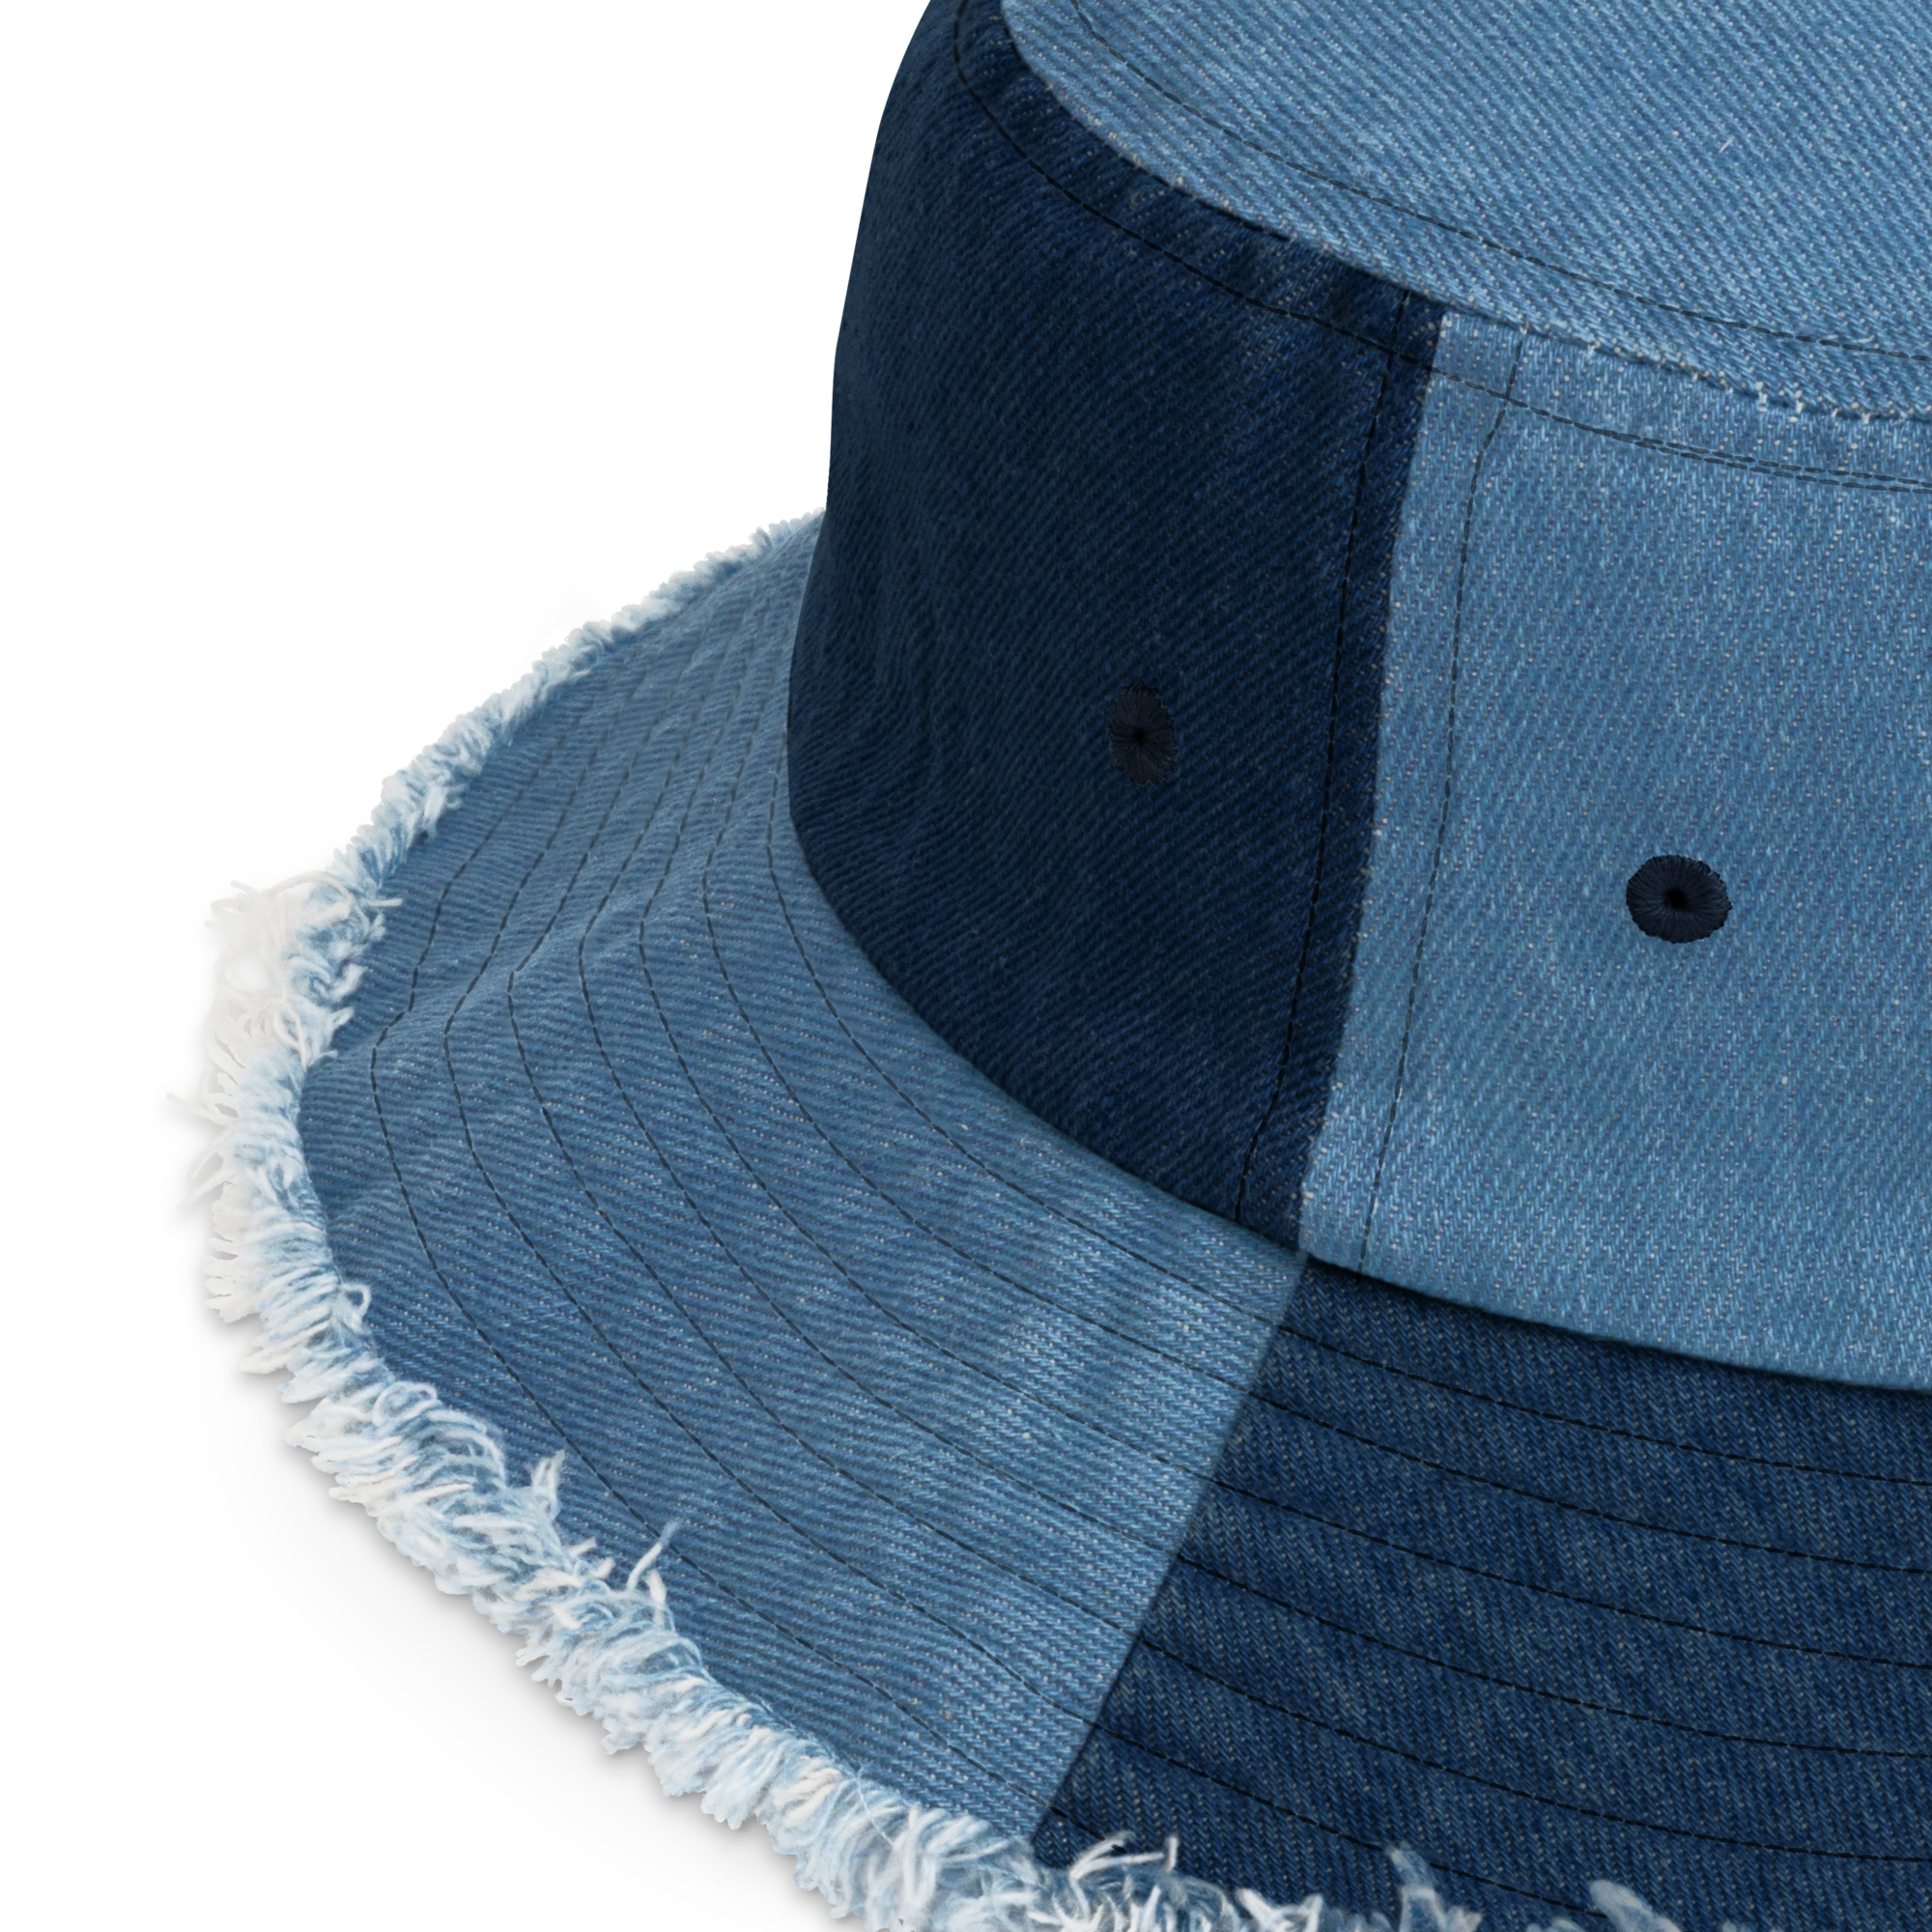 DISTRESSED DENIM BUCKET HAT IN BLUE